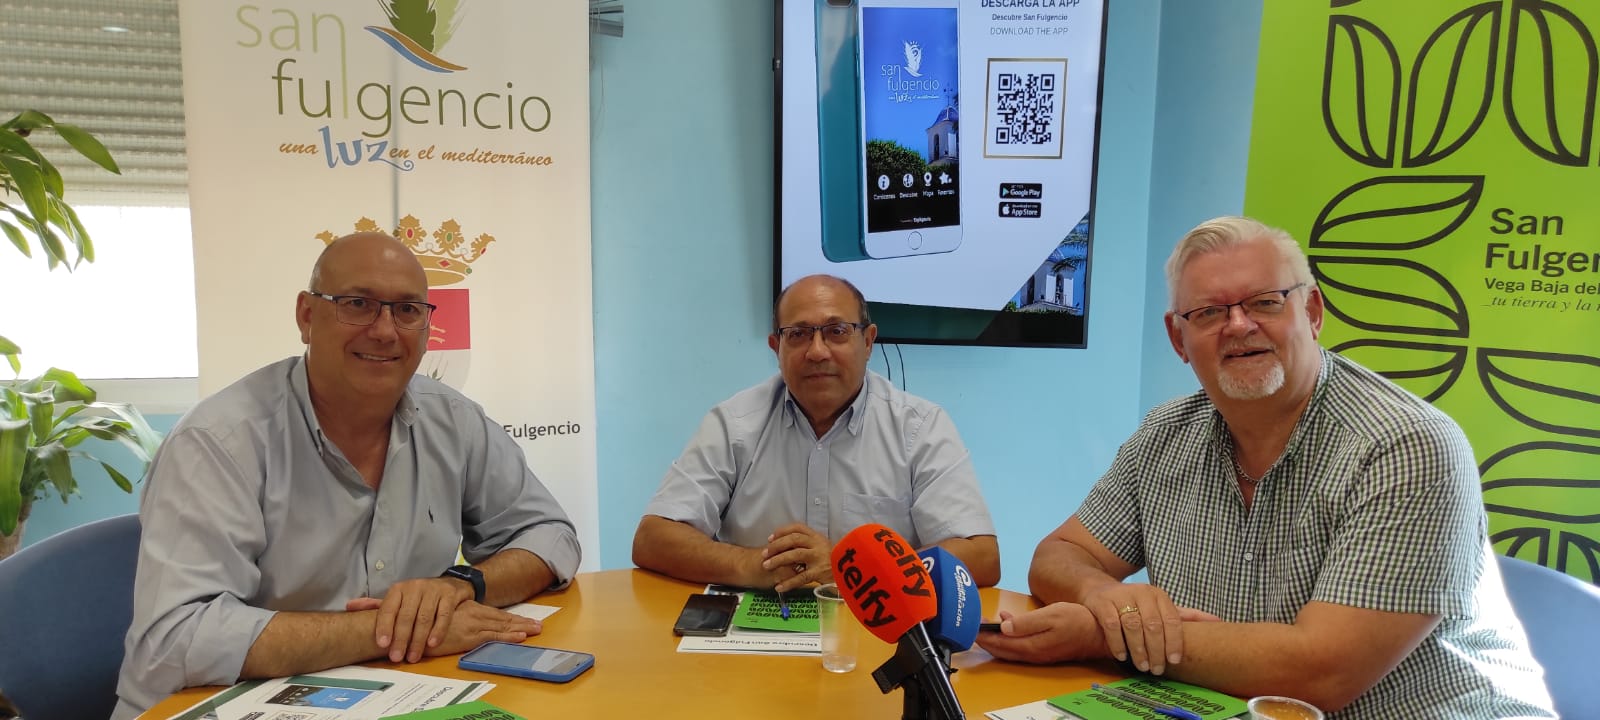 San Fulgencio presenta una nueva aplicación móvil para la promoción turística del municipio